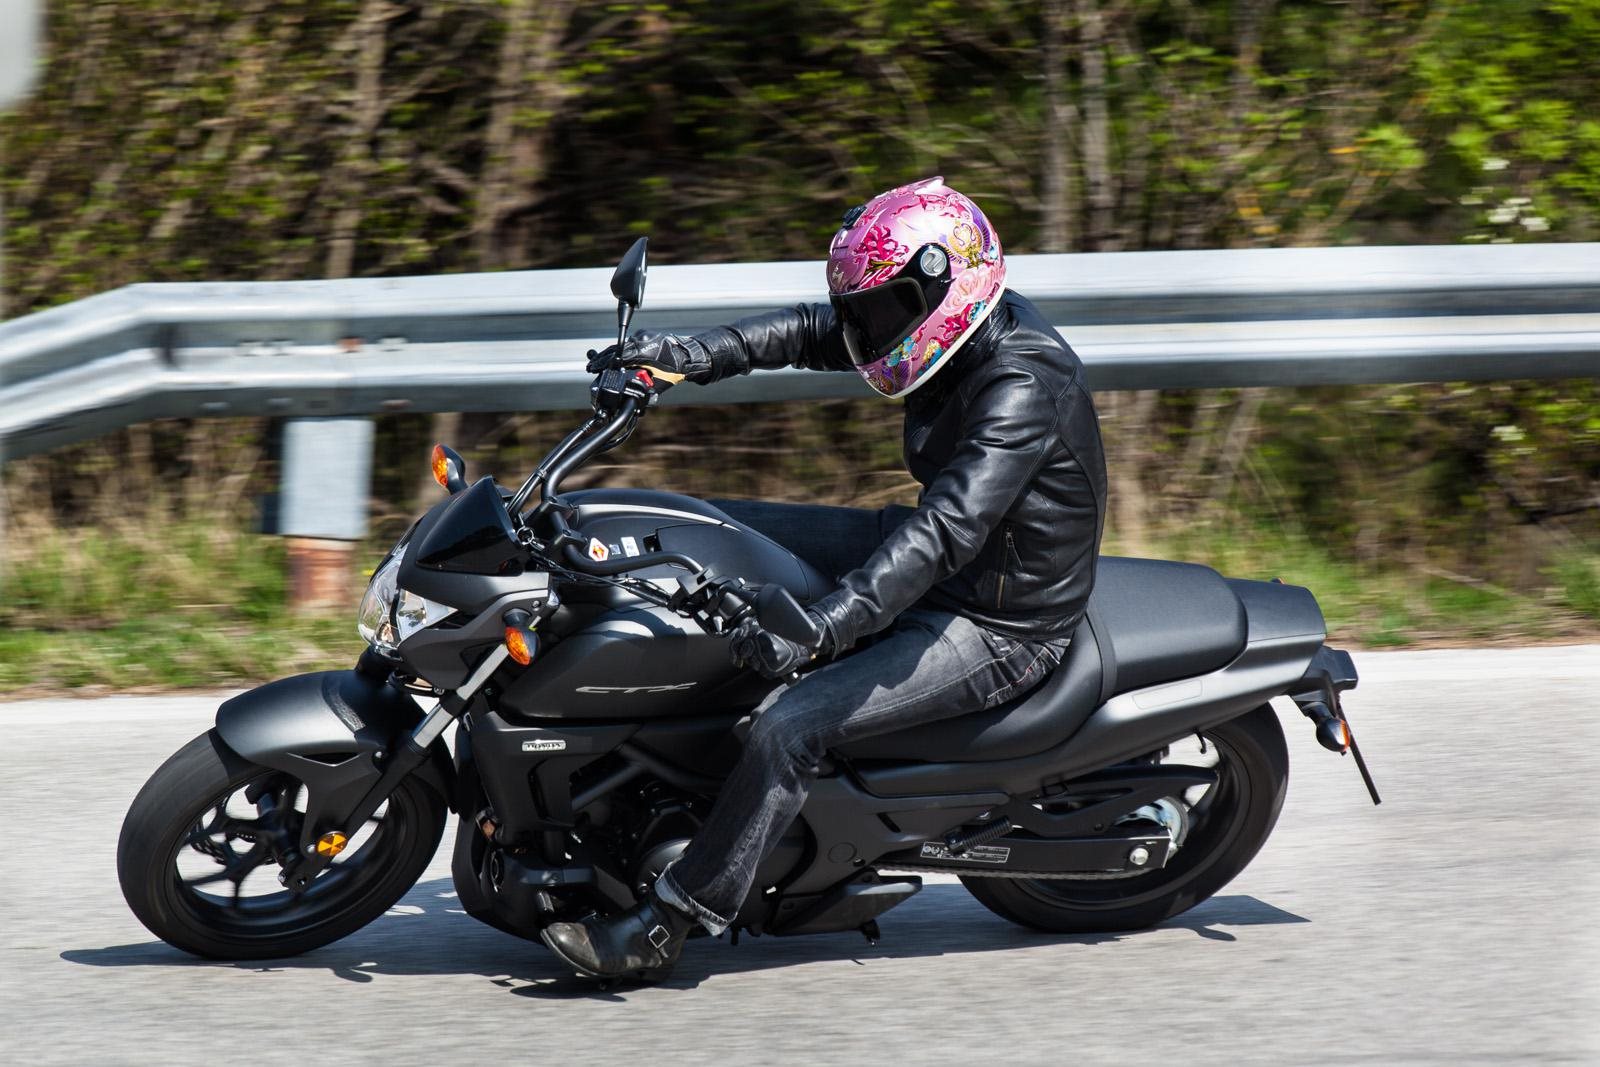 Мотоцикл honda ctx 700n 2016 — излагаем во всех подробностях